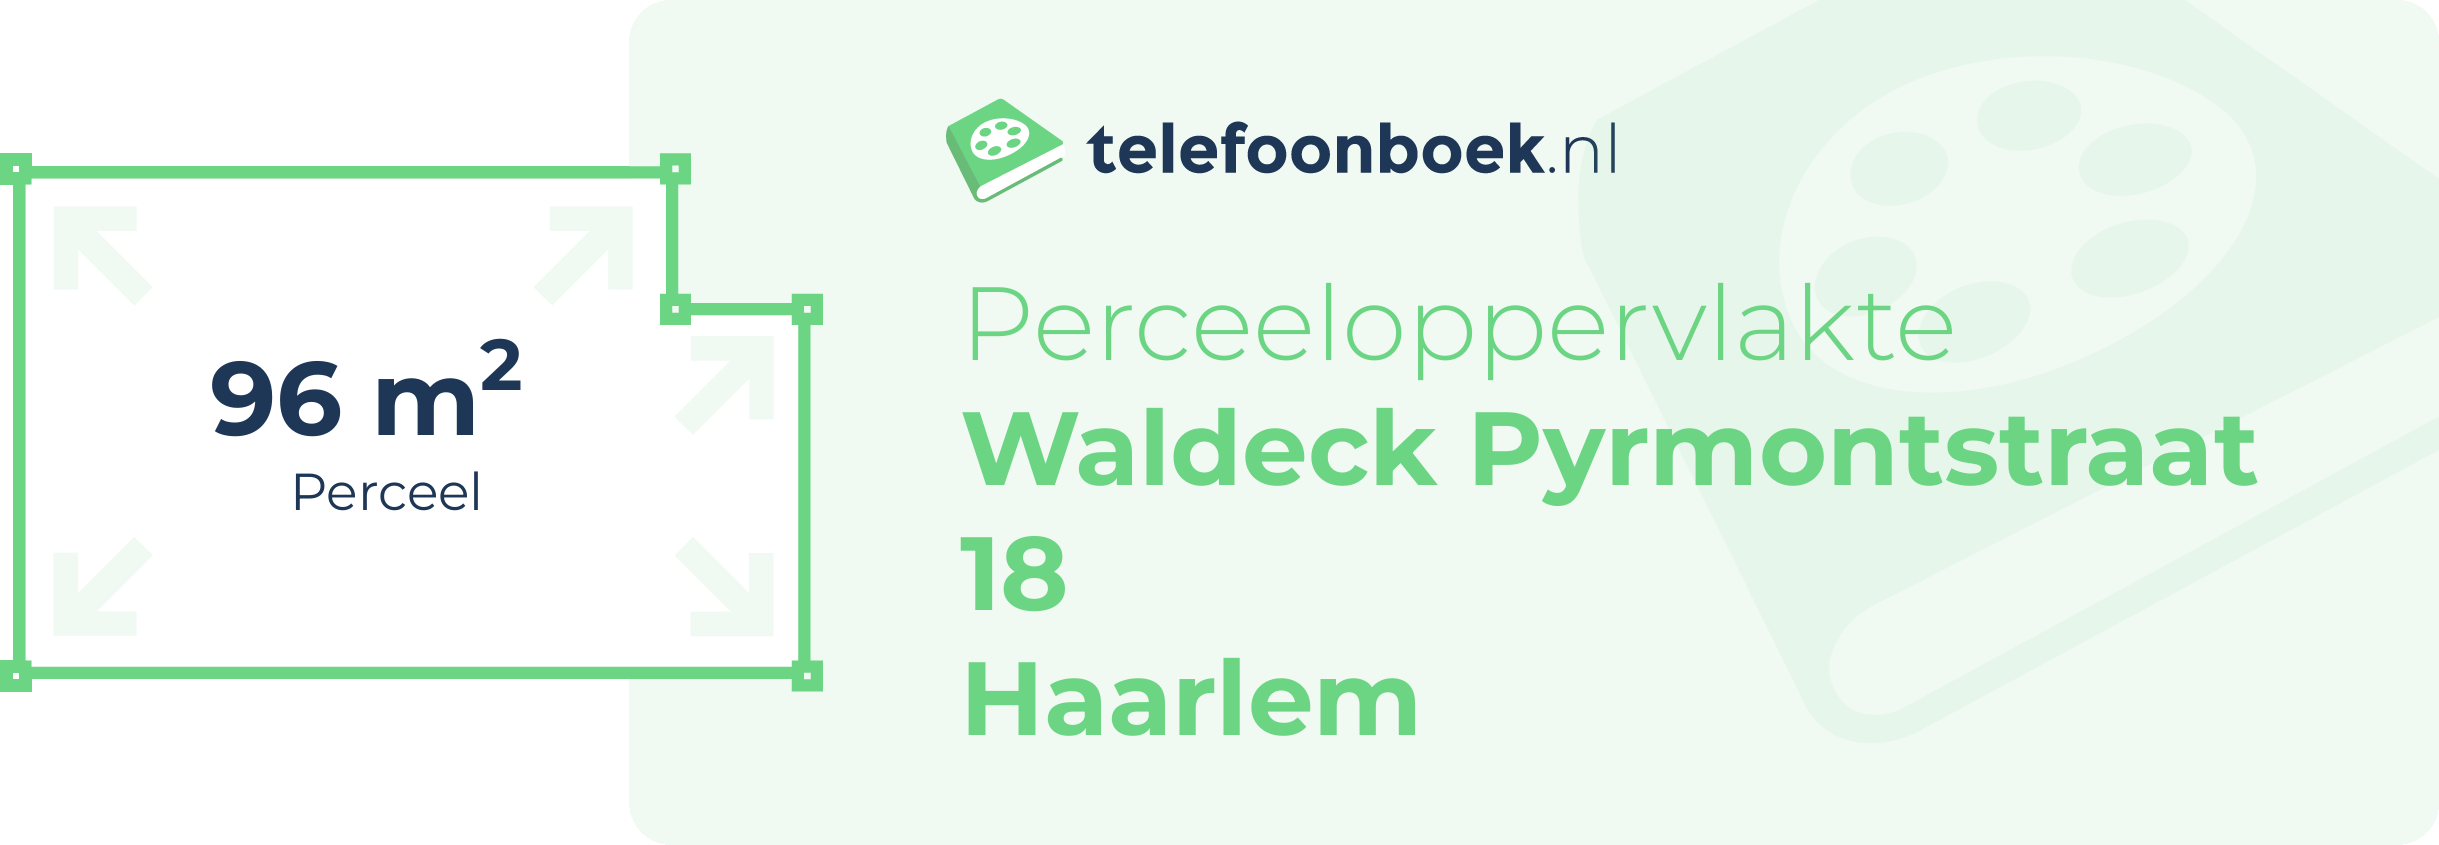 Perceeloppervlakte Waldeck Pyrmontstraat 18 Haarlem